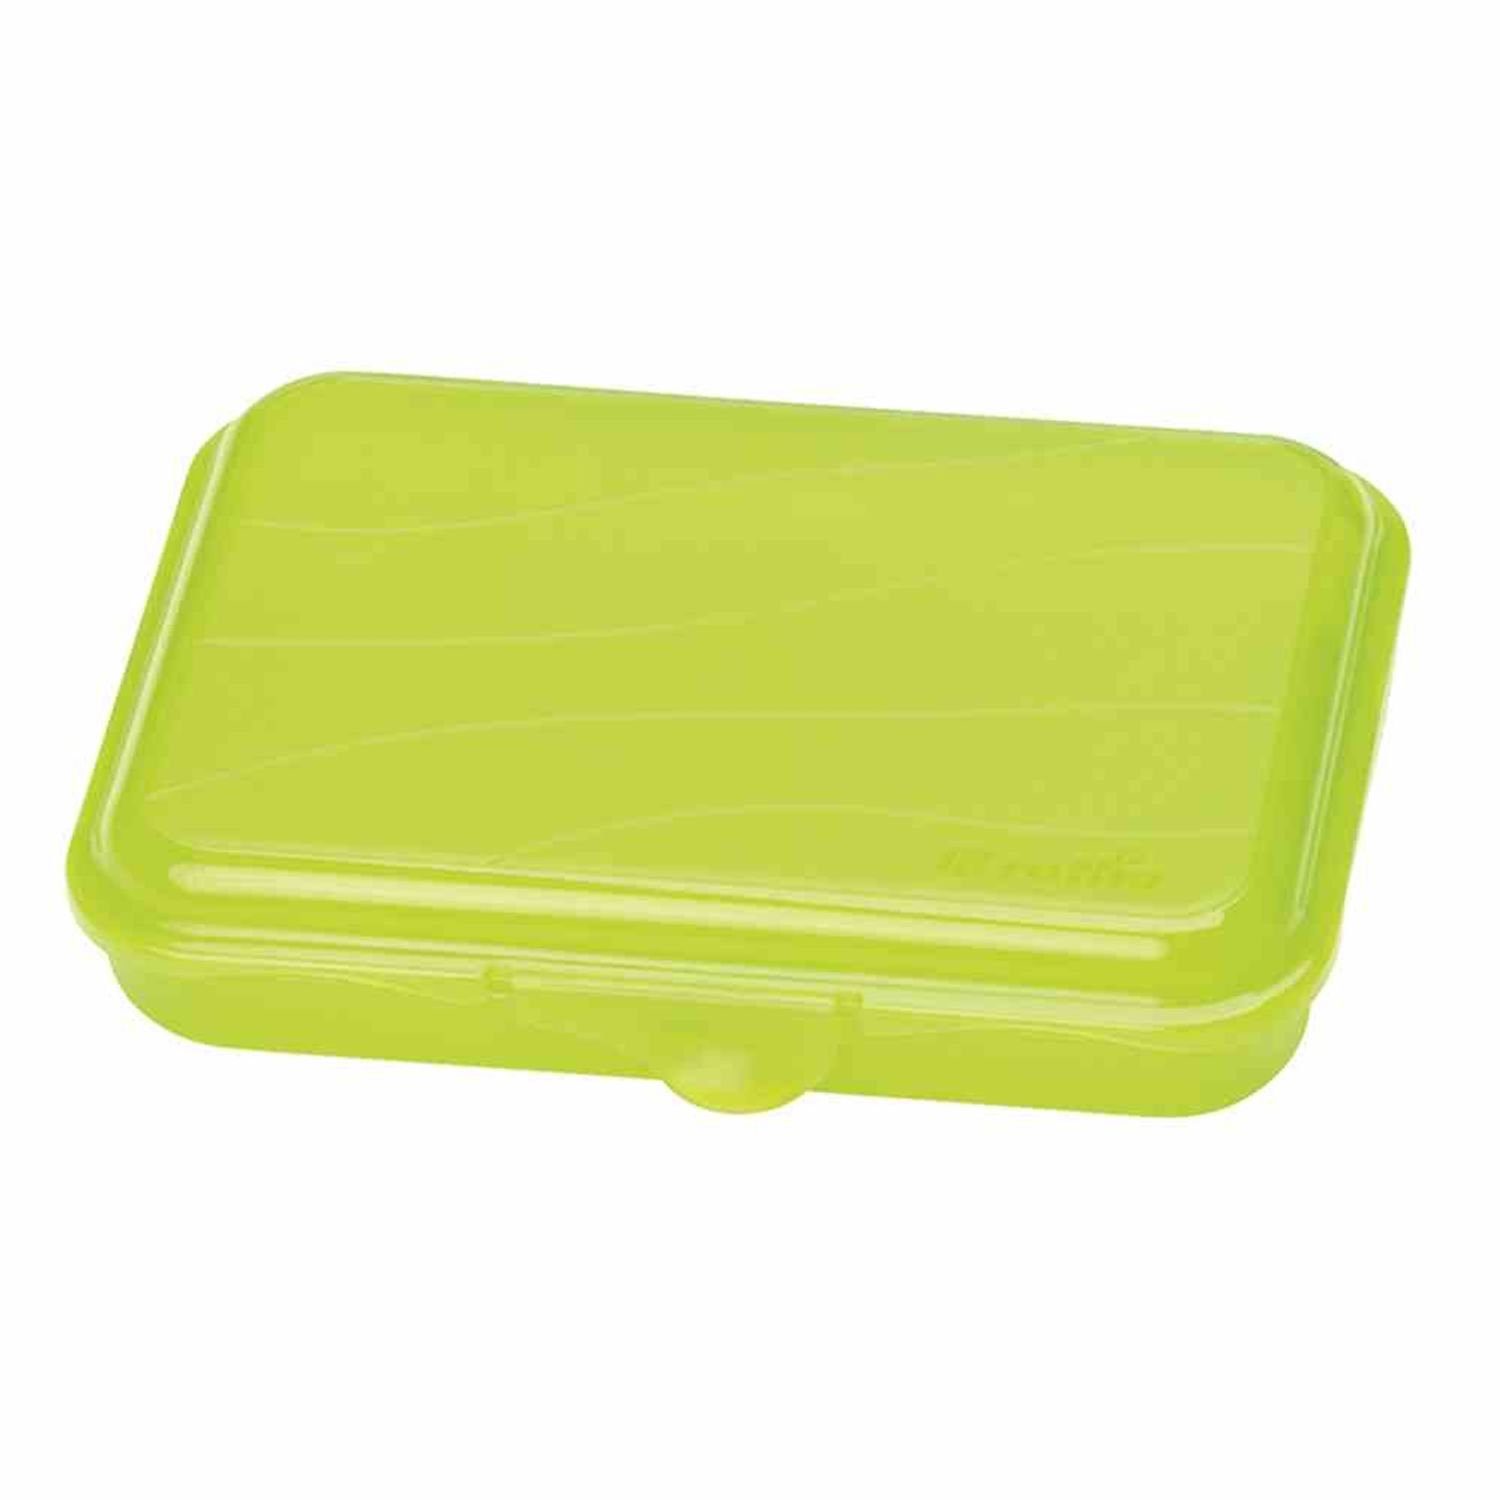 ROTHO Vorratsdose Funbox "Fun" 0,75 l lime grün transparent, Kunststoff